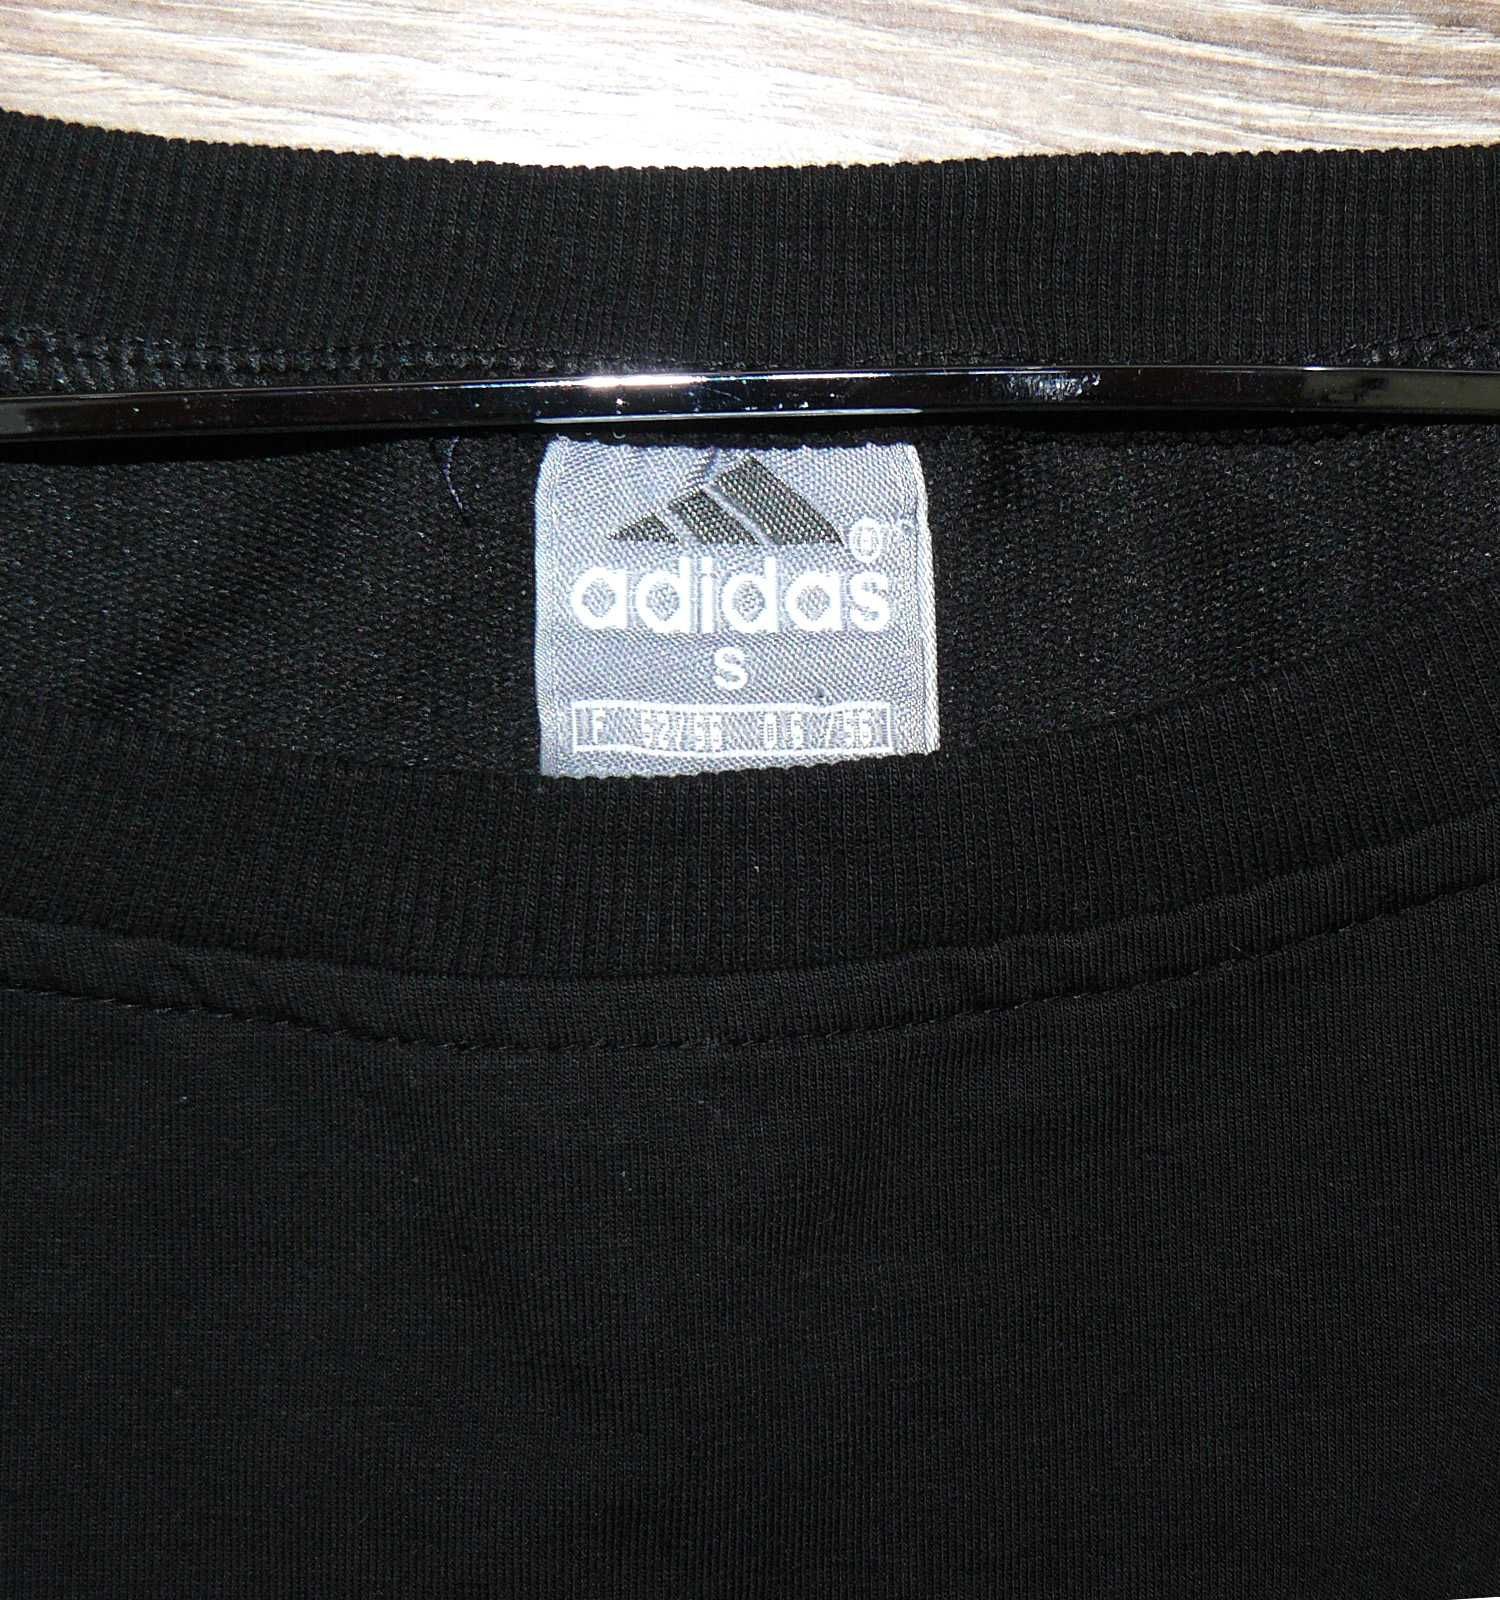 Adidas Śliczna bluza duże logo roz S